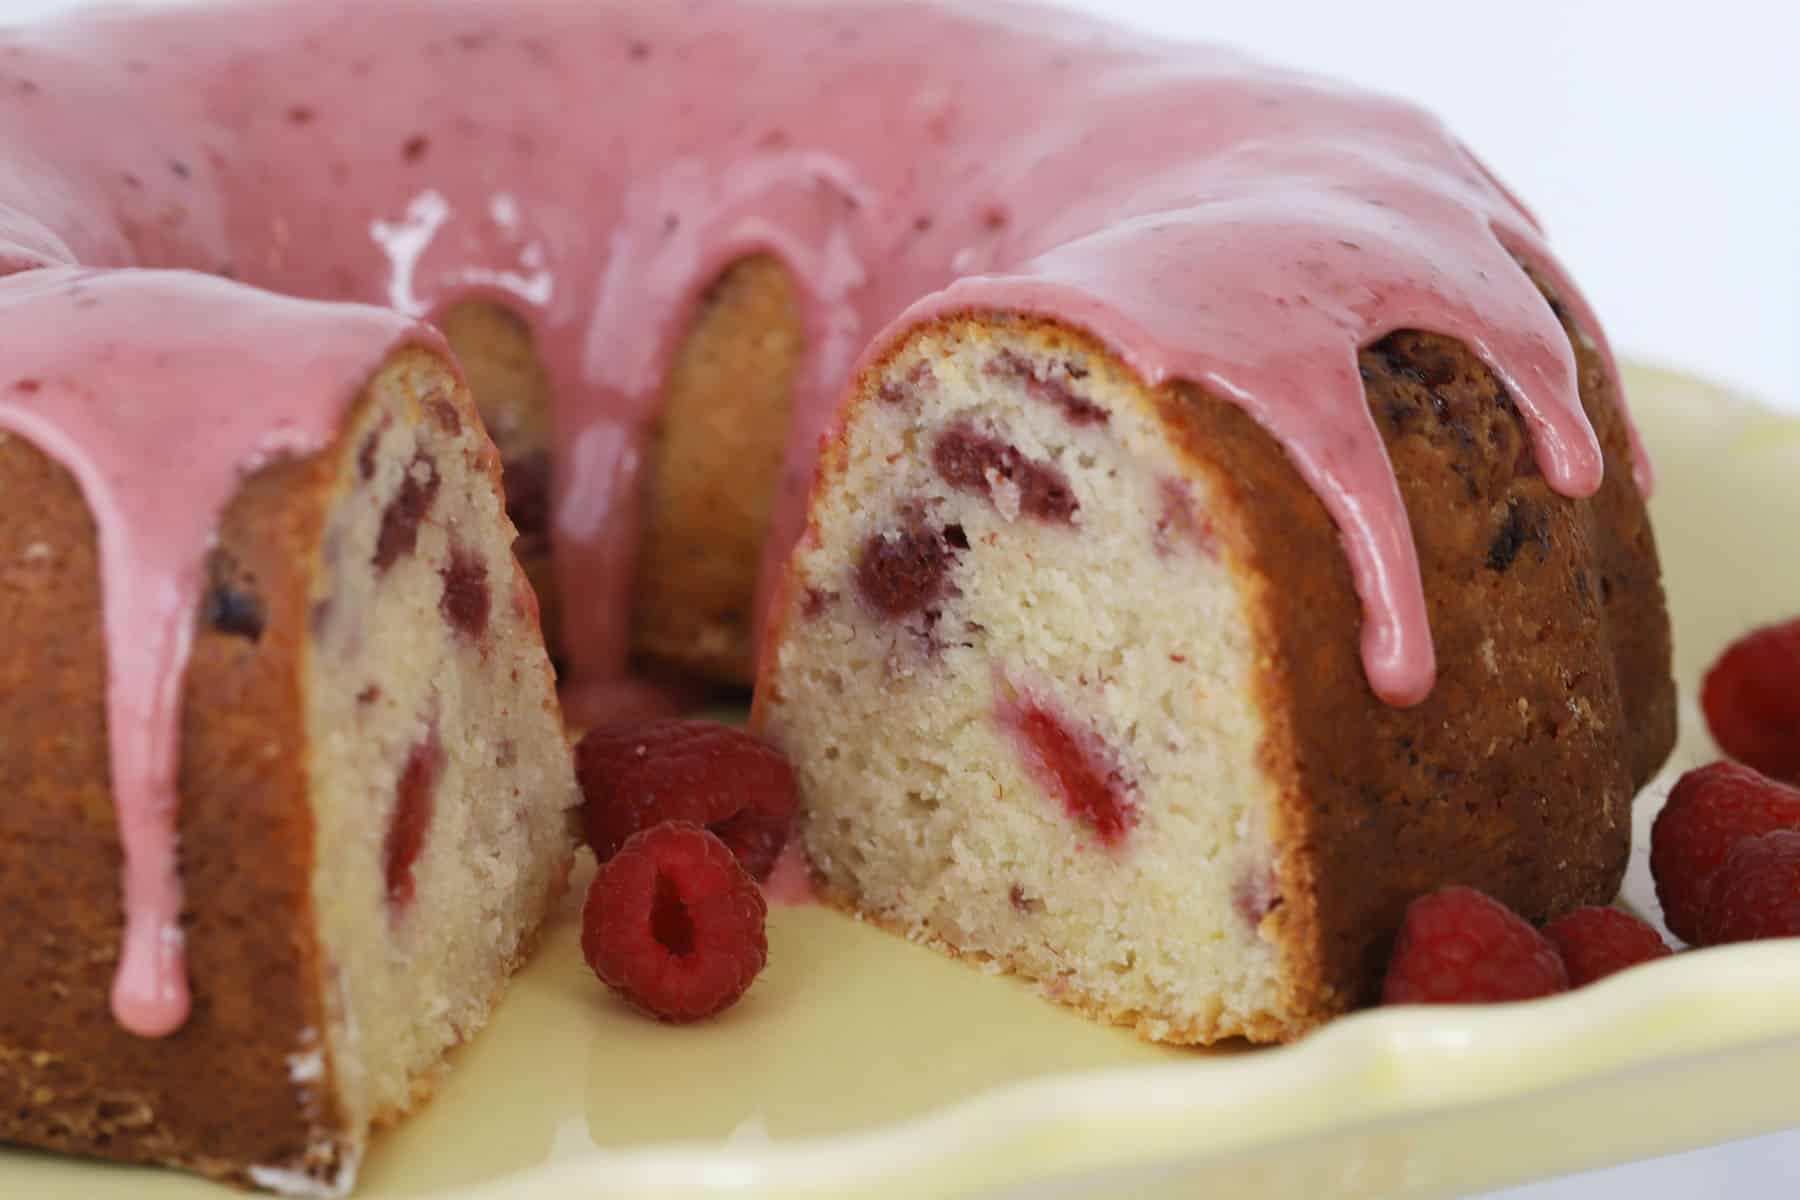 Bundt cake with a slice cut out, glazed with raspberry glaze.